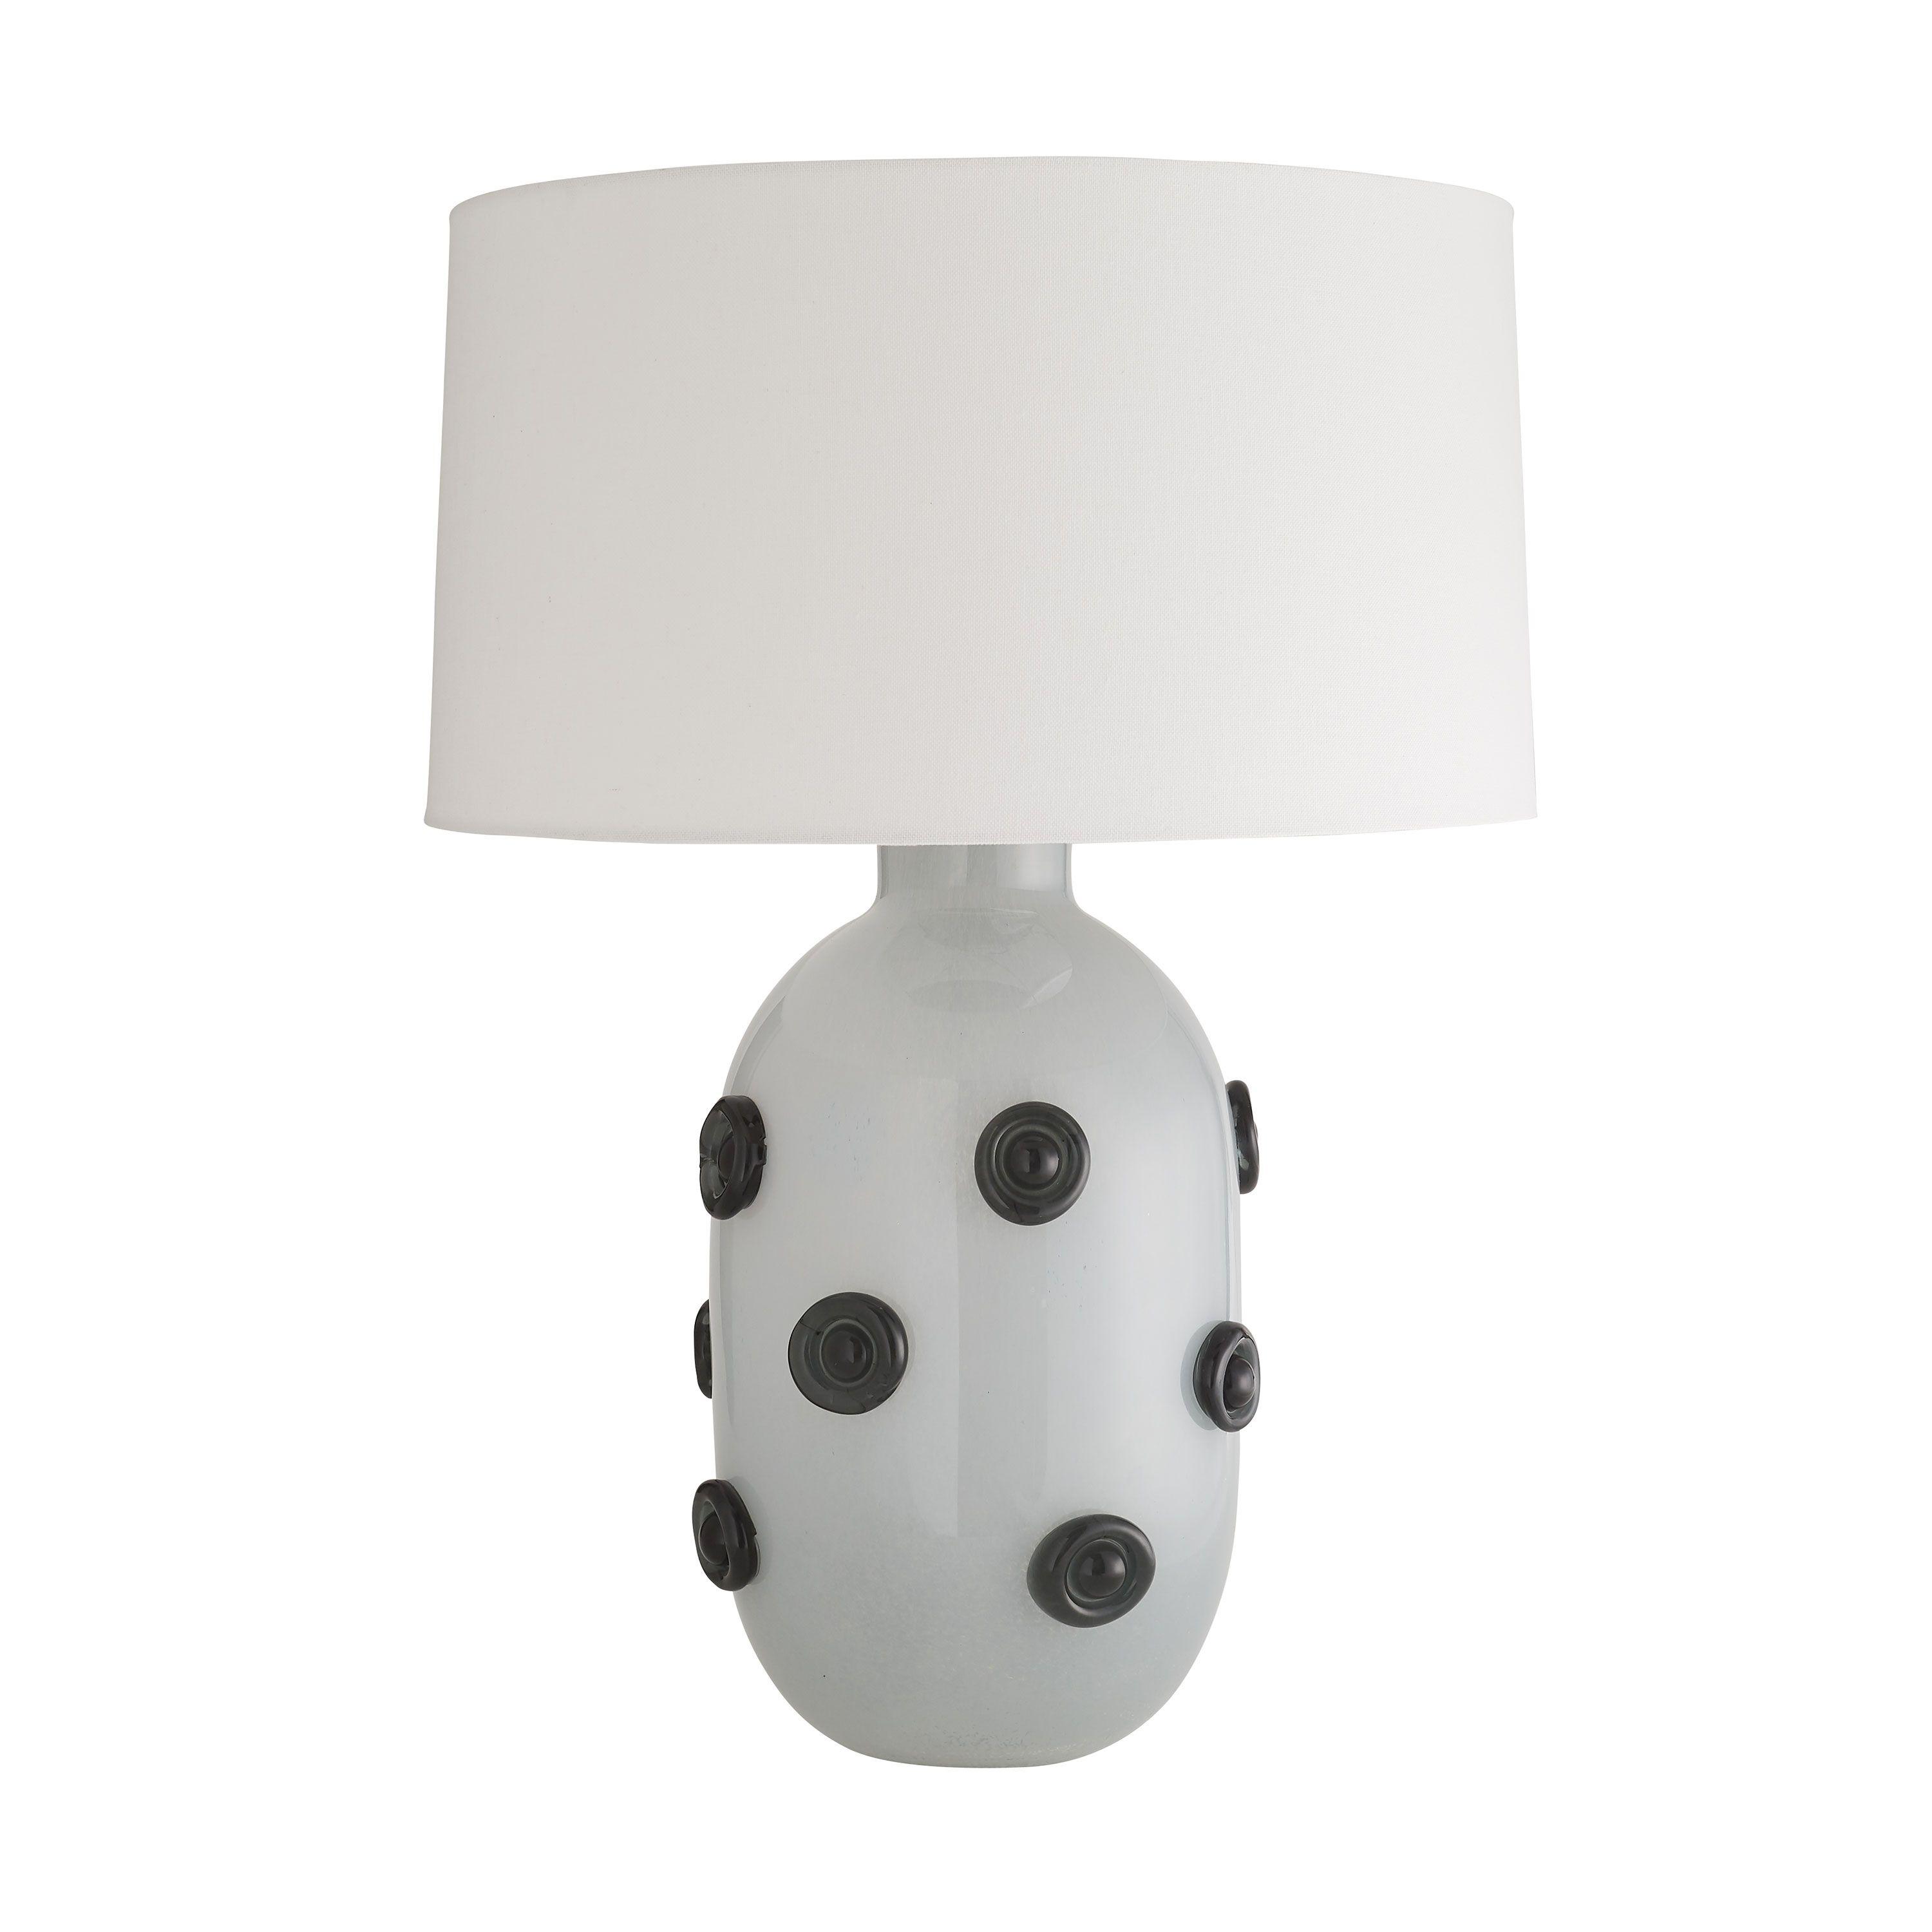 Купить Настольная лампа Fogler Lamp в интернет-магазине roooms.ru